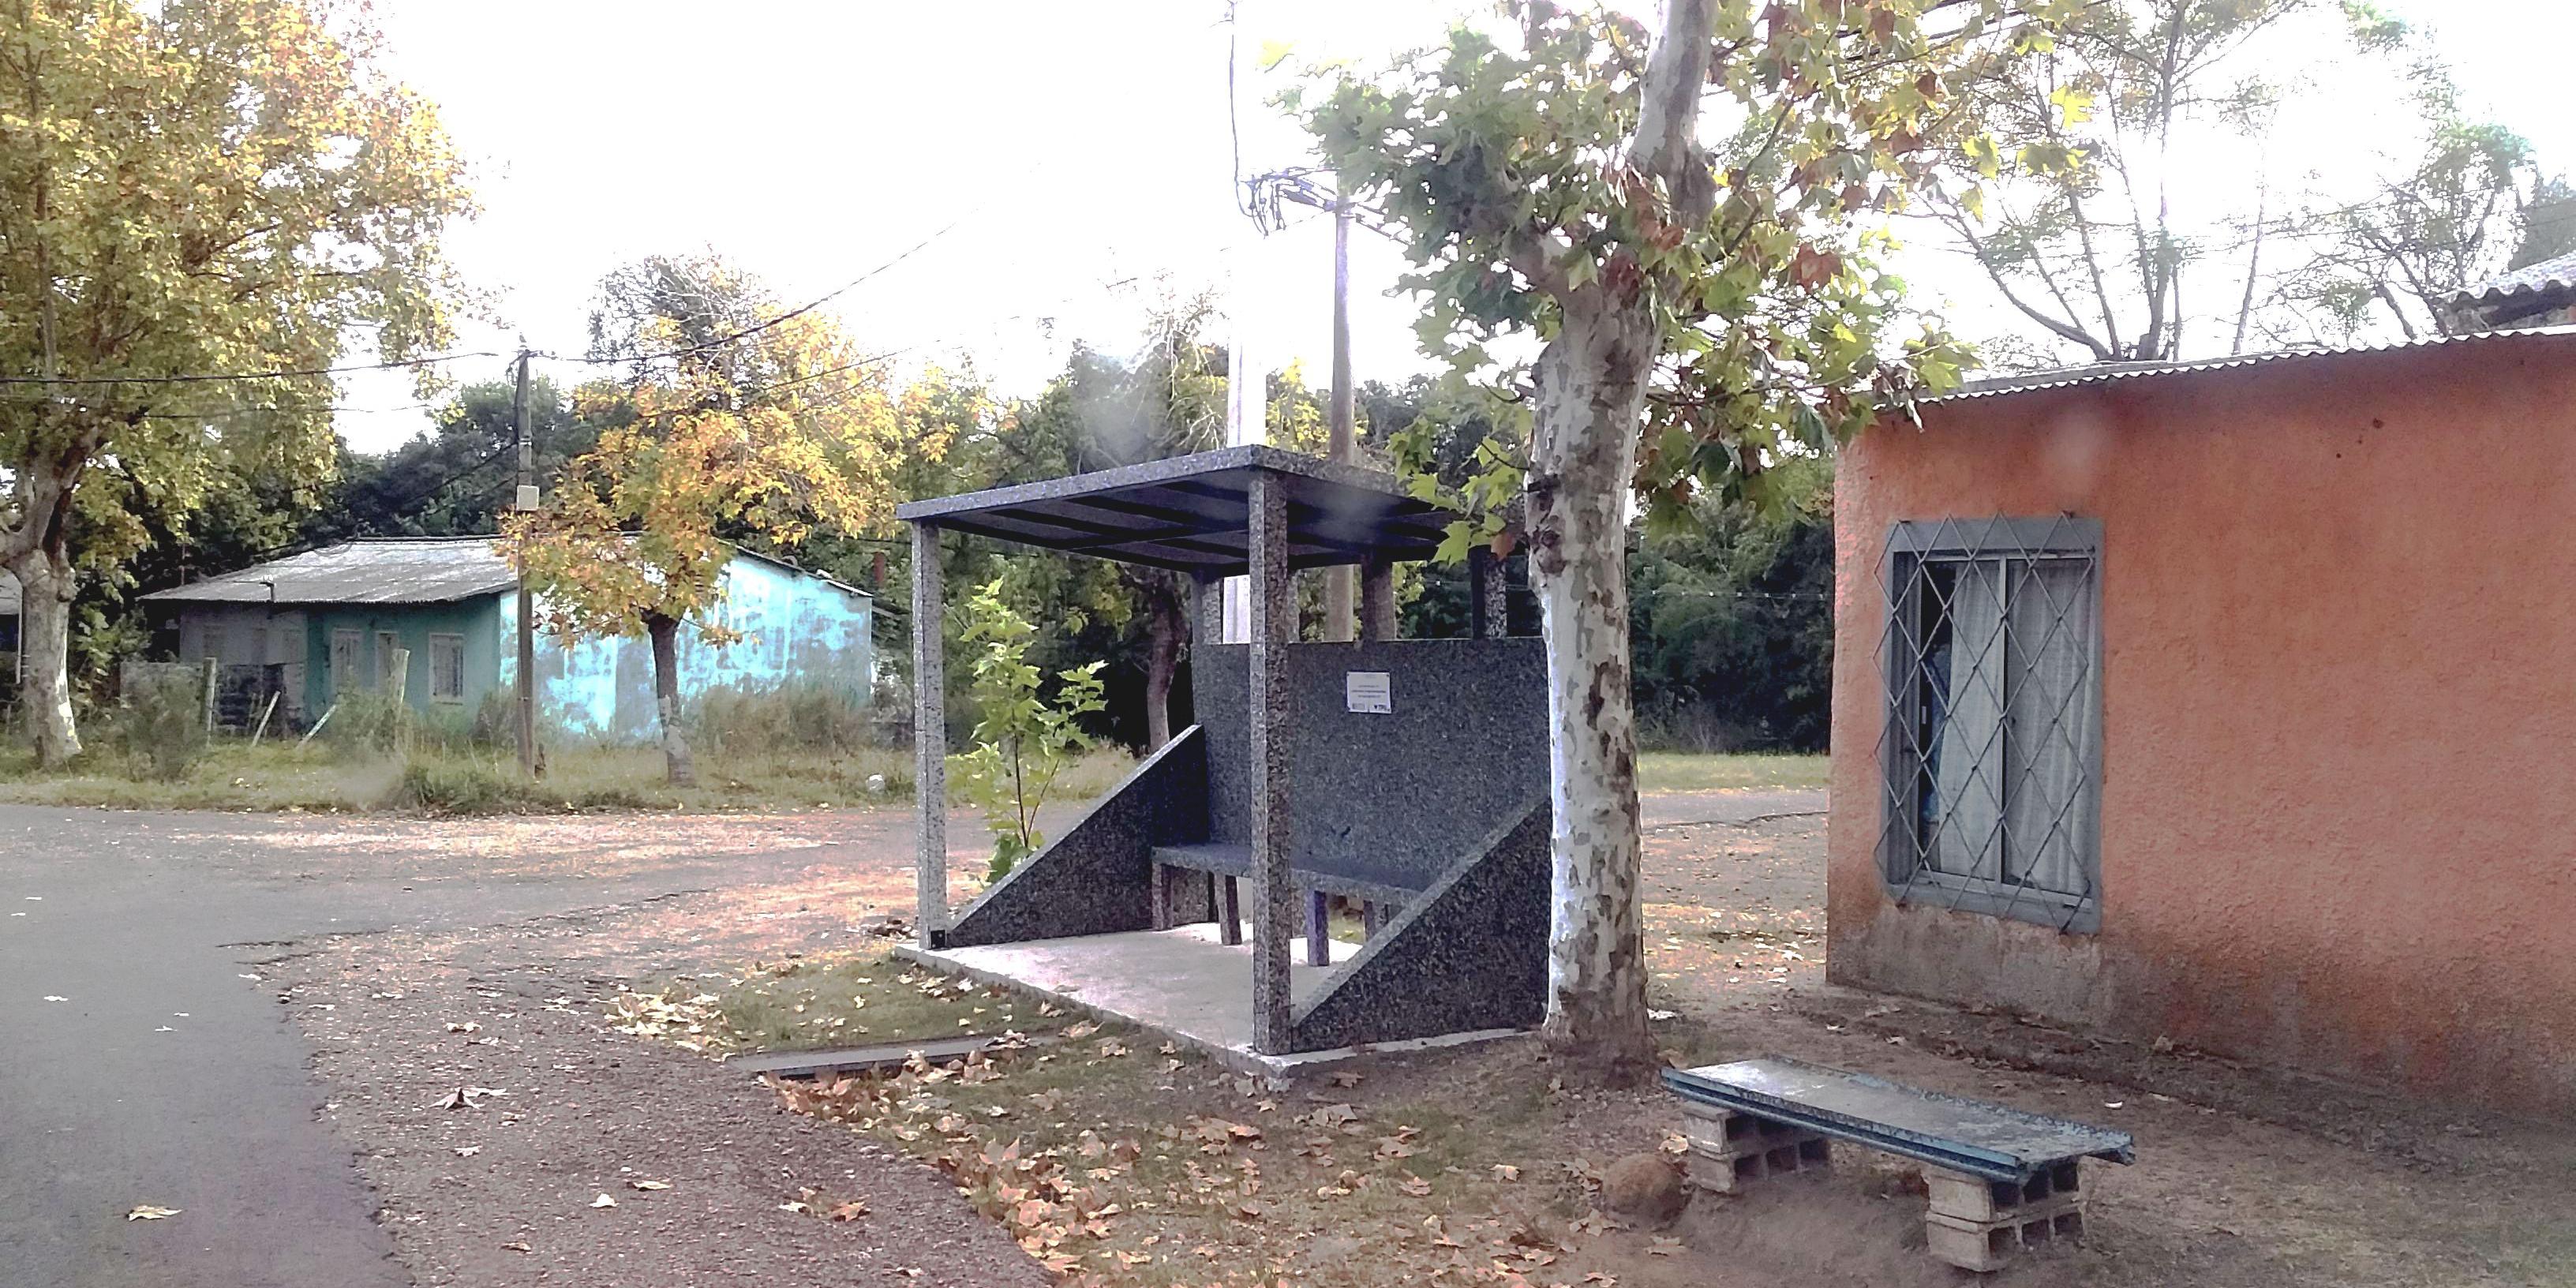 Refugio para parada de ómnibus realizado con plástico reciclado